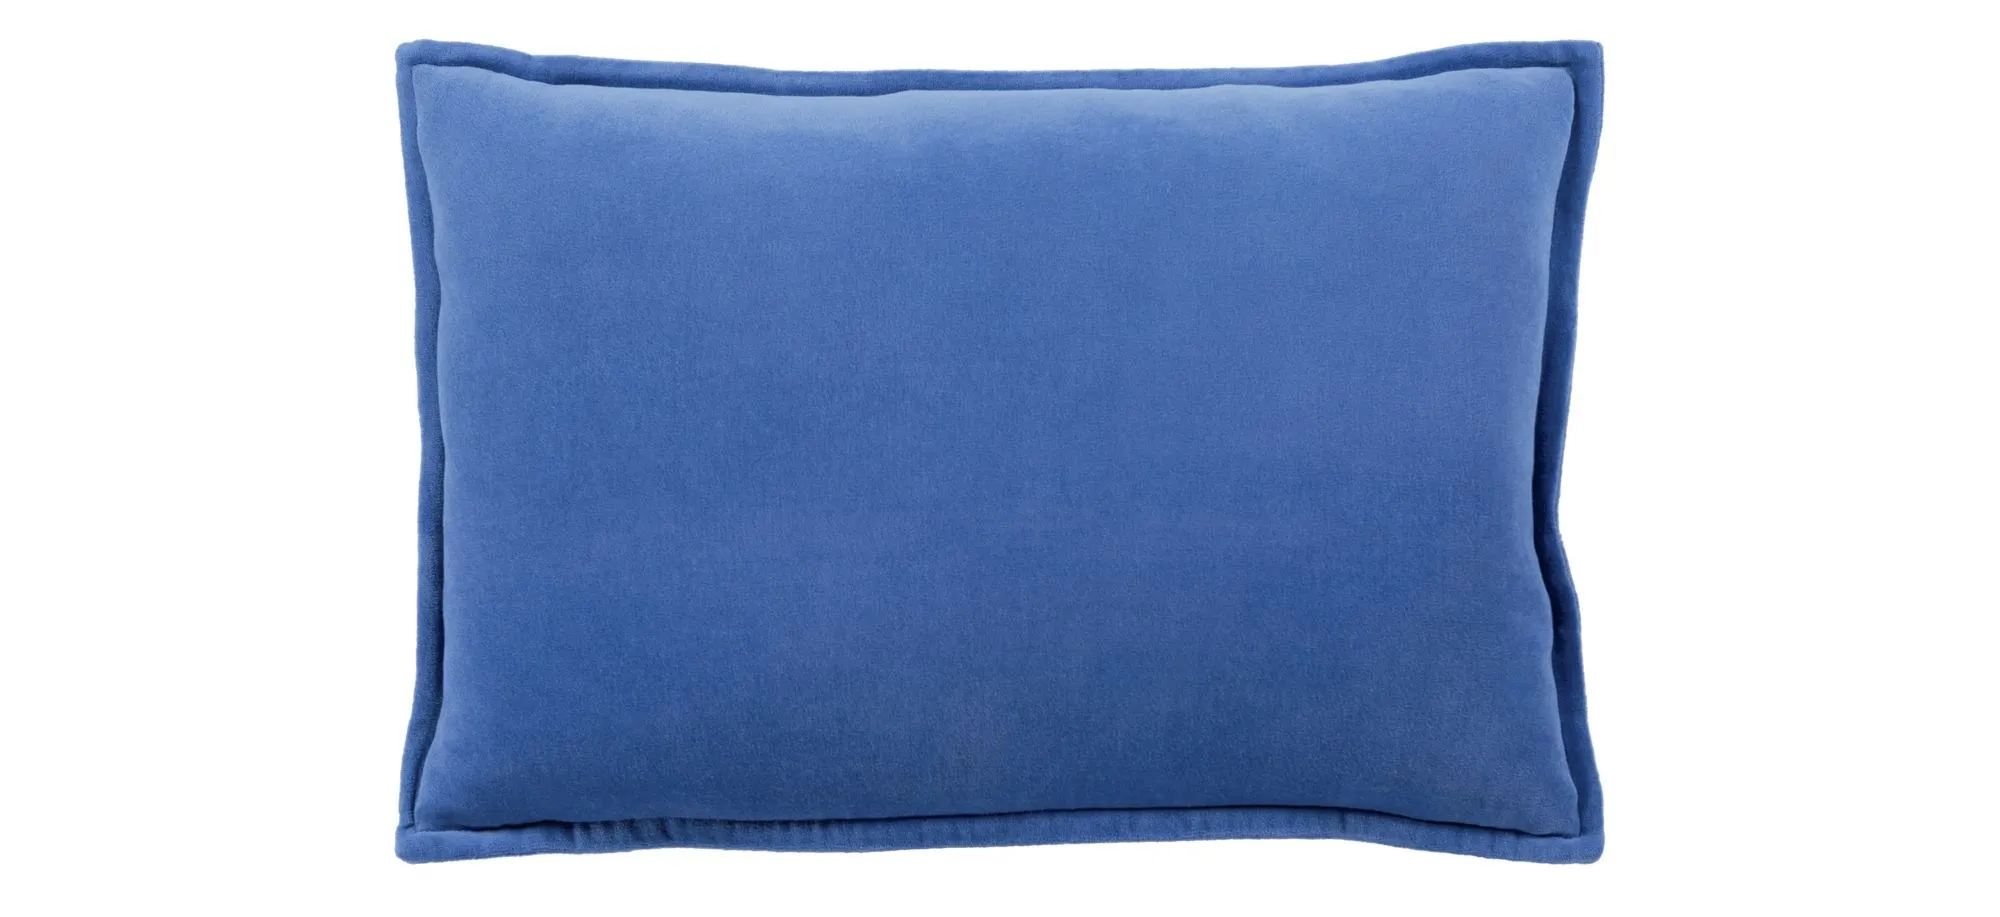 Cotton Velvet 13" x 20" Down Throw Pillow in Dark Blue by Surya